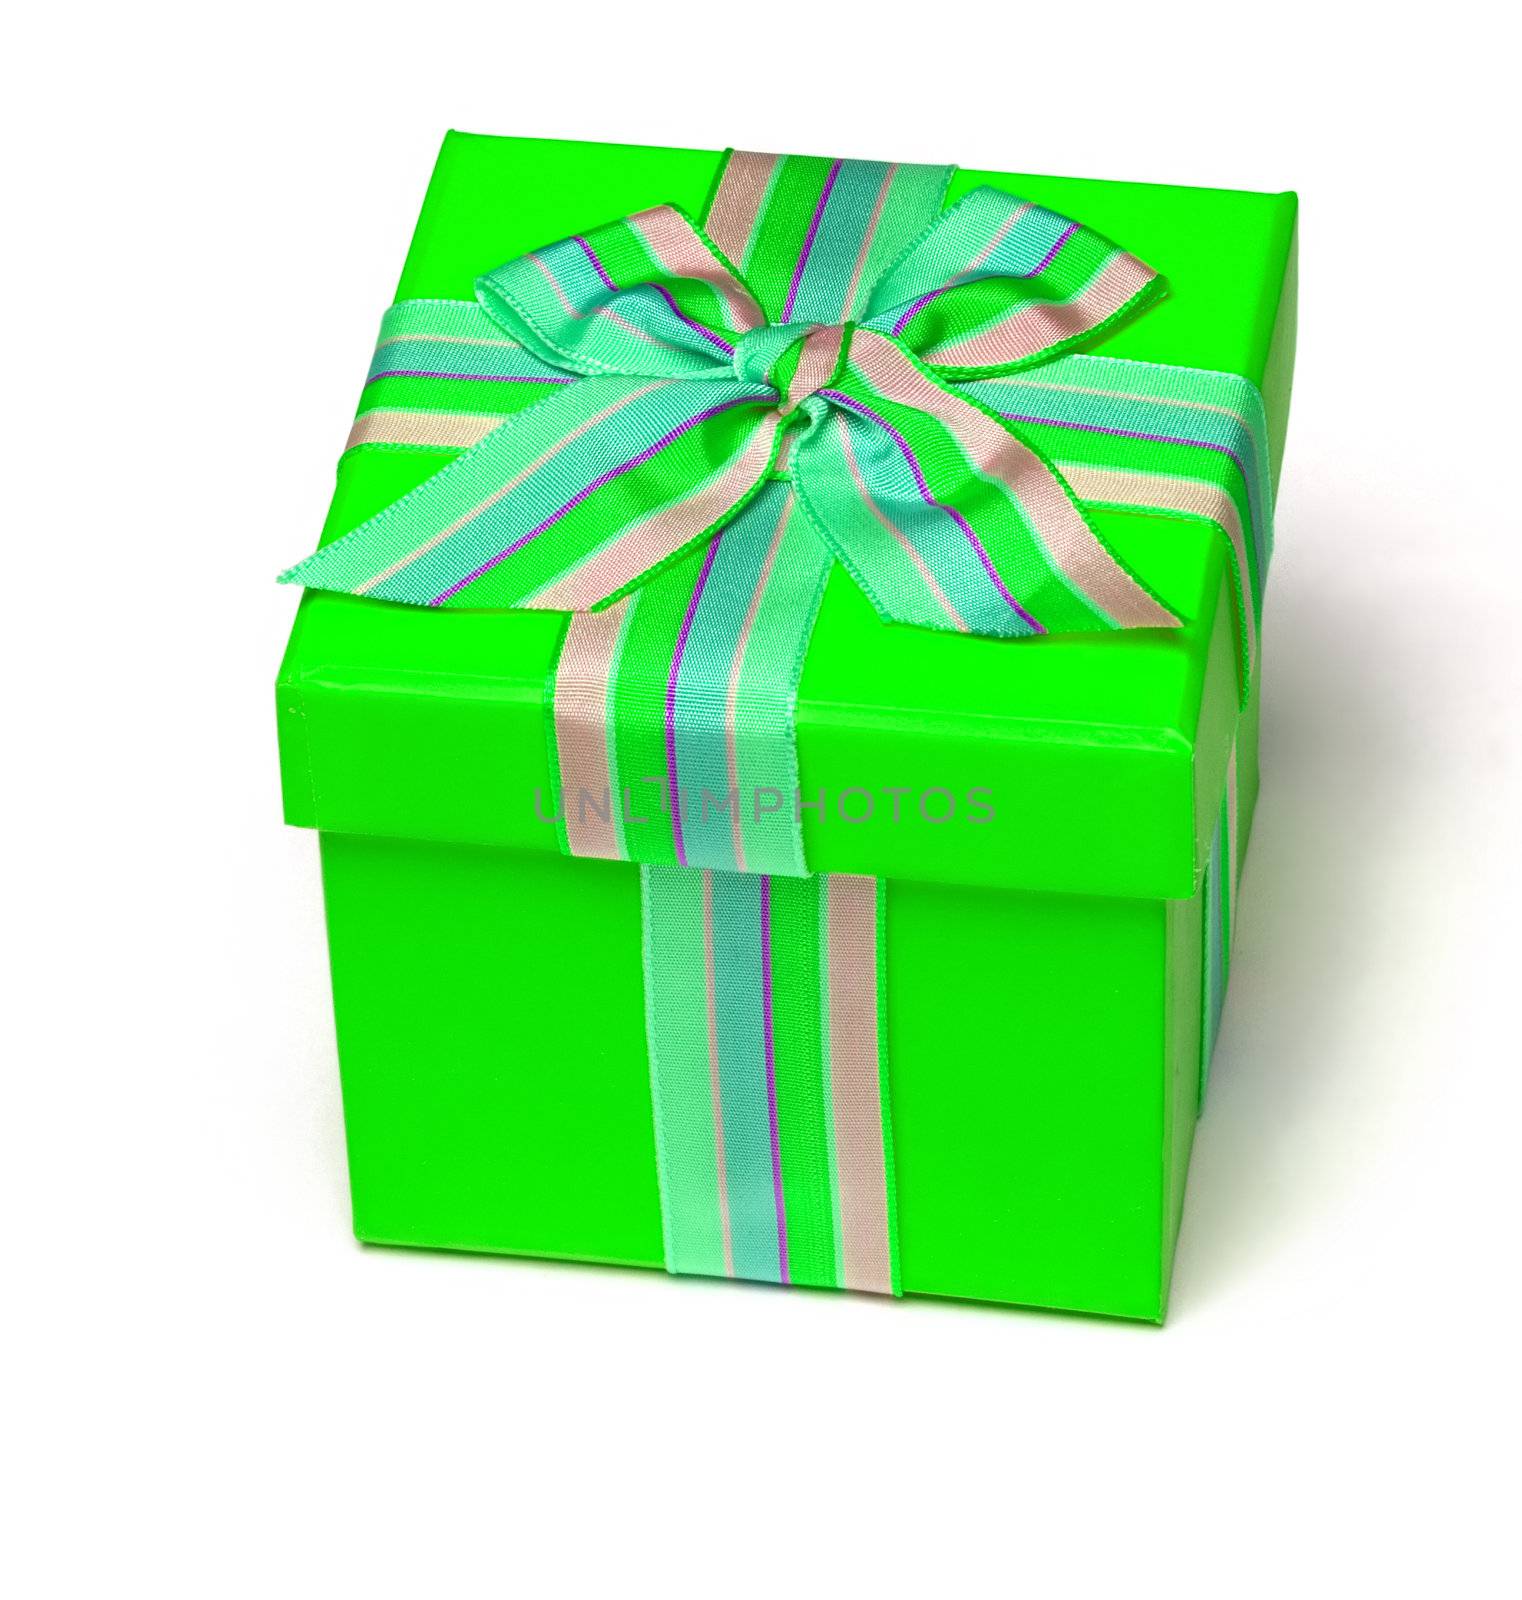 Green Gift Boxa, Isolated